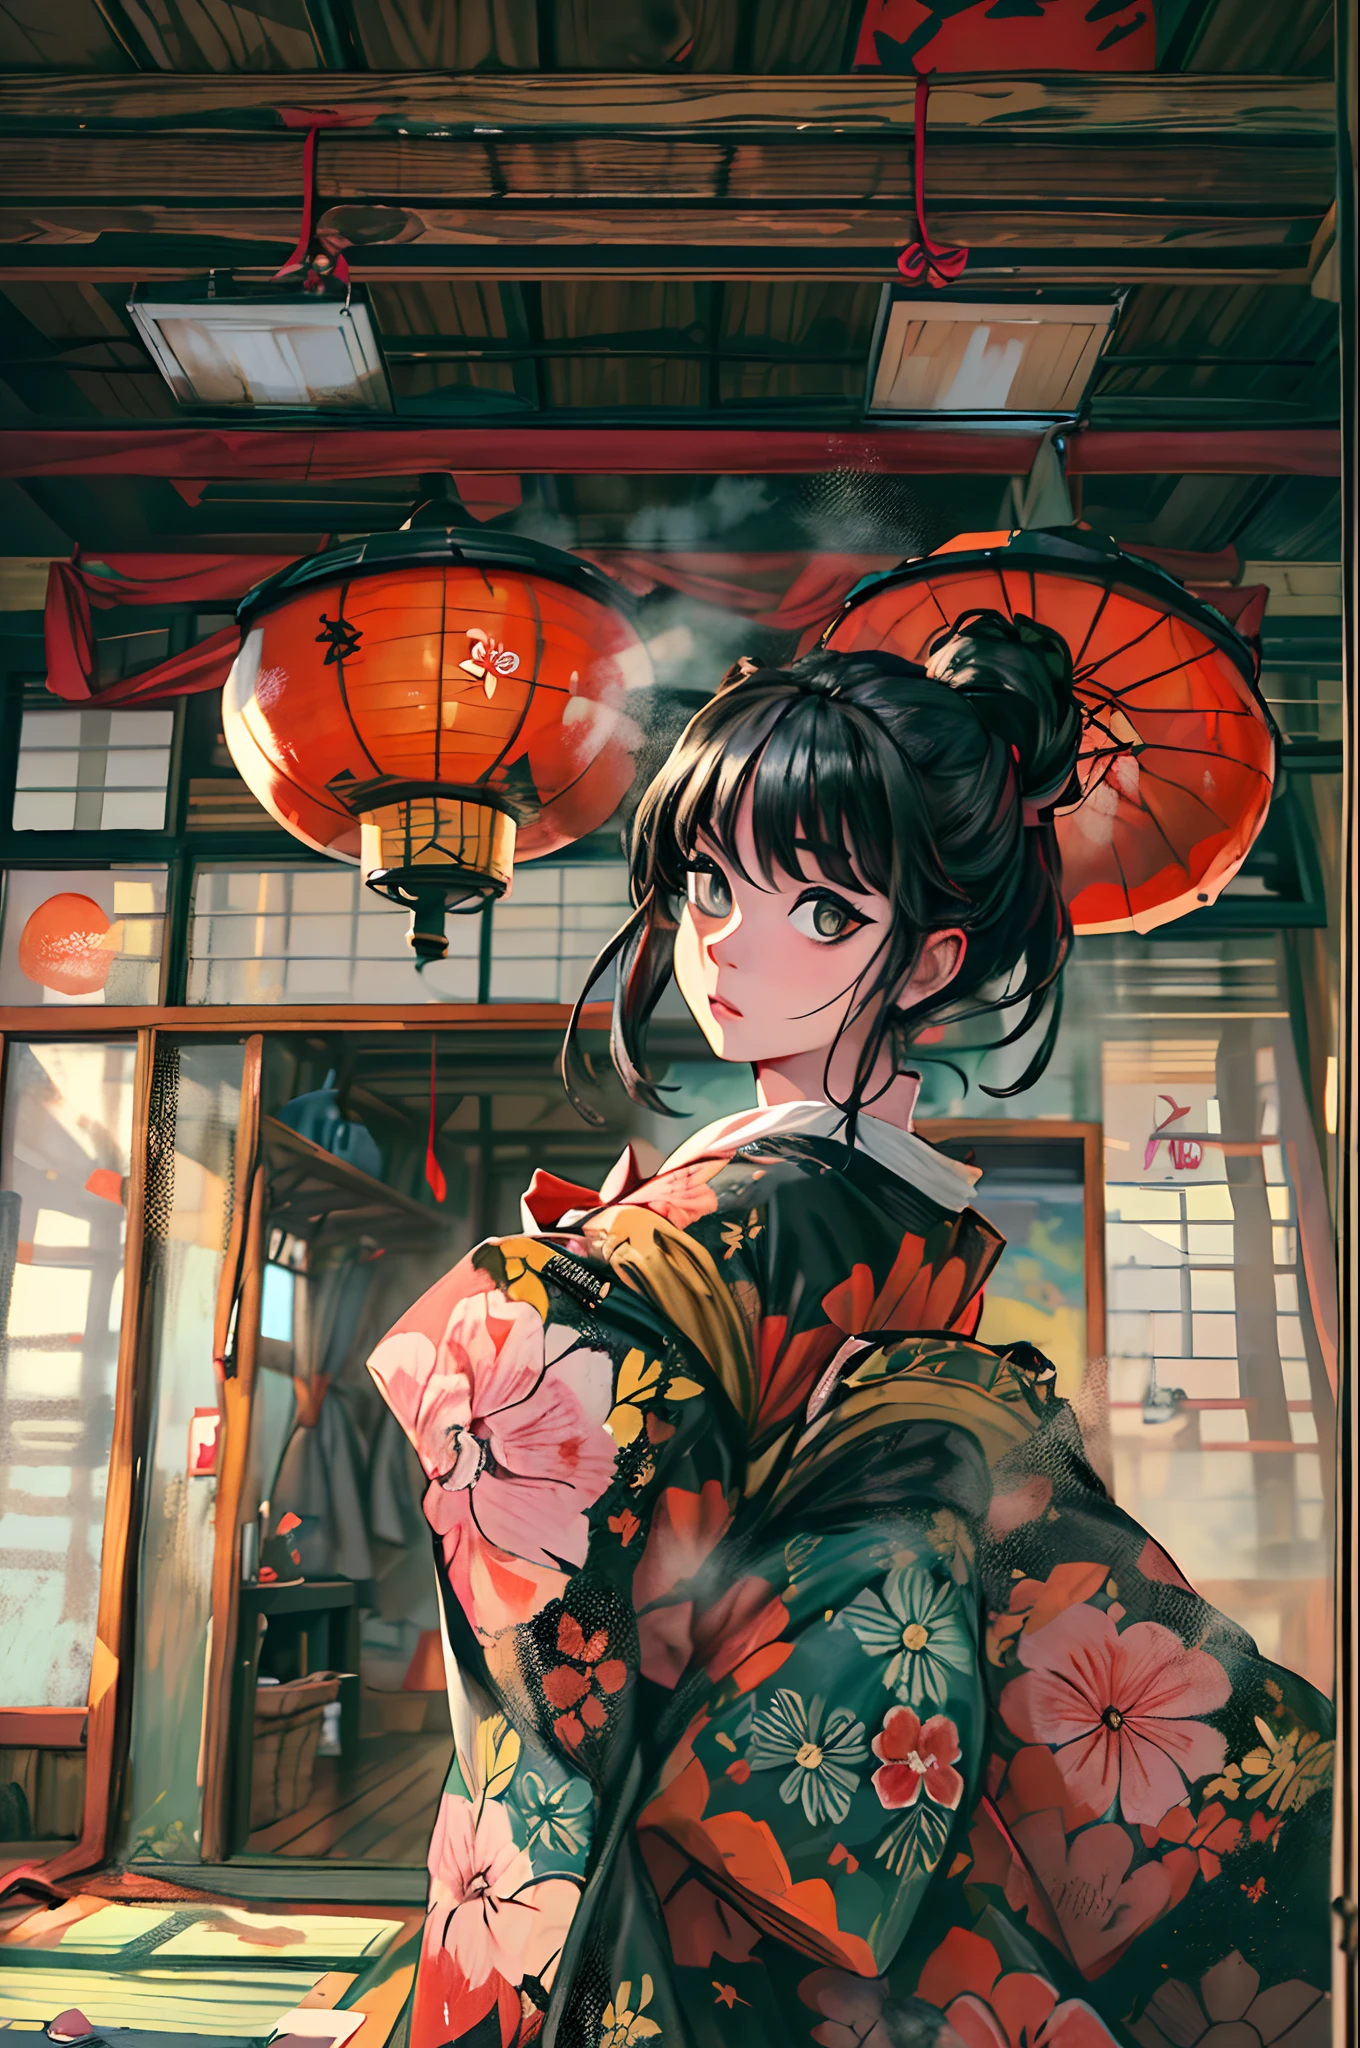 "(Una obra maestra impresionante con una calidad impecable.:1.5), capturado desde una vista frontal, con colores vibrantes y saturados, una chica increíblemente hermosa con cabello negro y rostro exquisitamente detallado, visto desde una perspectiva de abajo hacia arriba, vestido con un kimono tradicional, ambientado en la belleza escénica de Japón, rodeado del auténtico ambiente de los tatamis, con una ventana abierta enmarcando la escena."